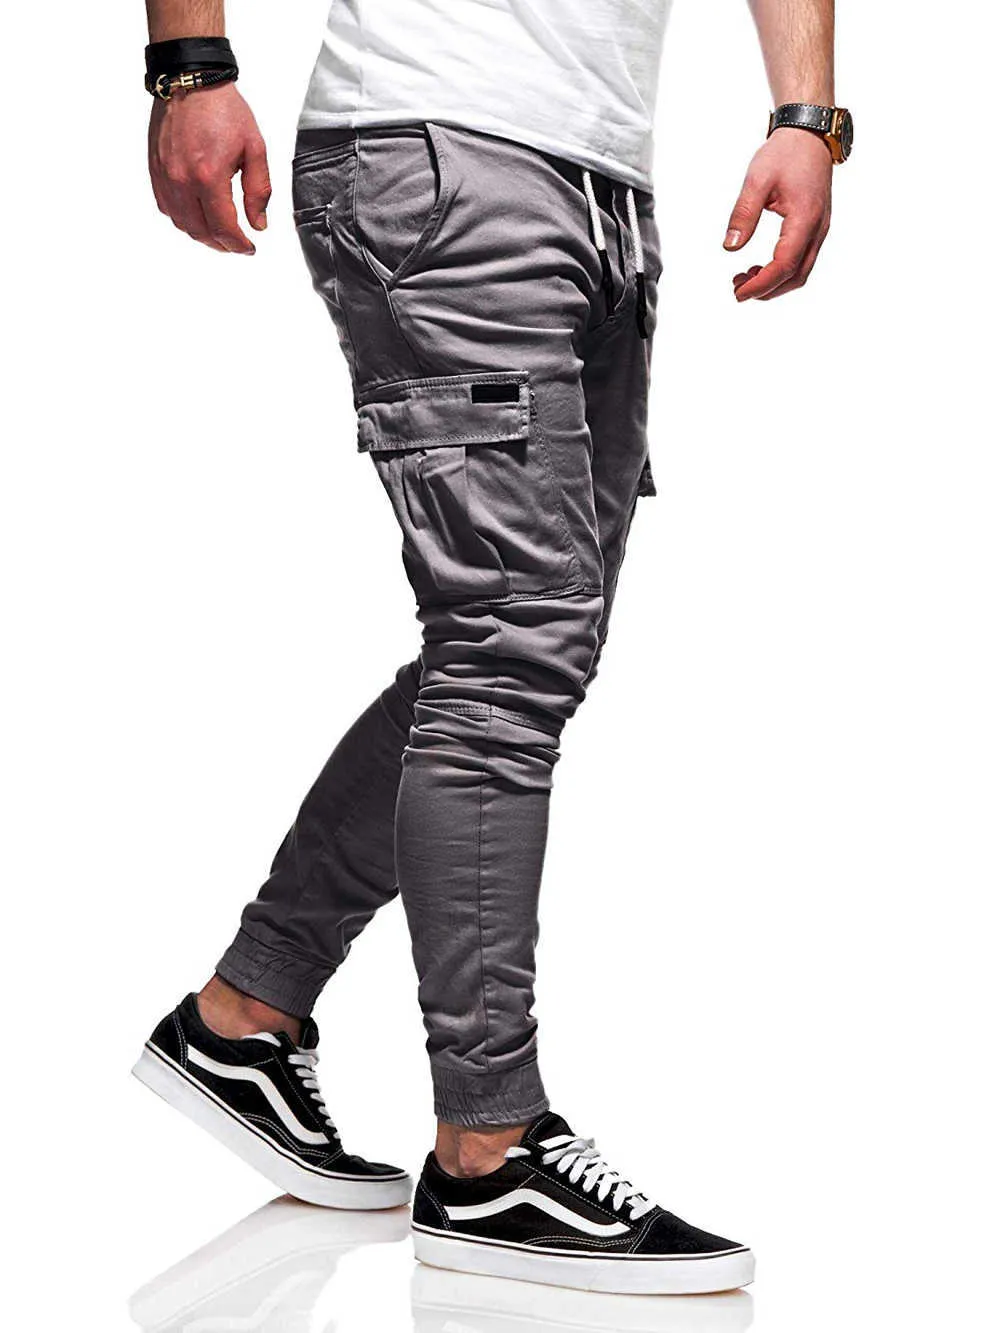 Automne Hommes Pantalons Hip Hop Harem Joggers Pantalons 2021 Nouveau Pantalon Mâle Hommes Joggers Solide Pantalon Multi-poches Pantalon de Survêtement M-4XL X0723